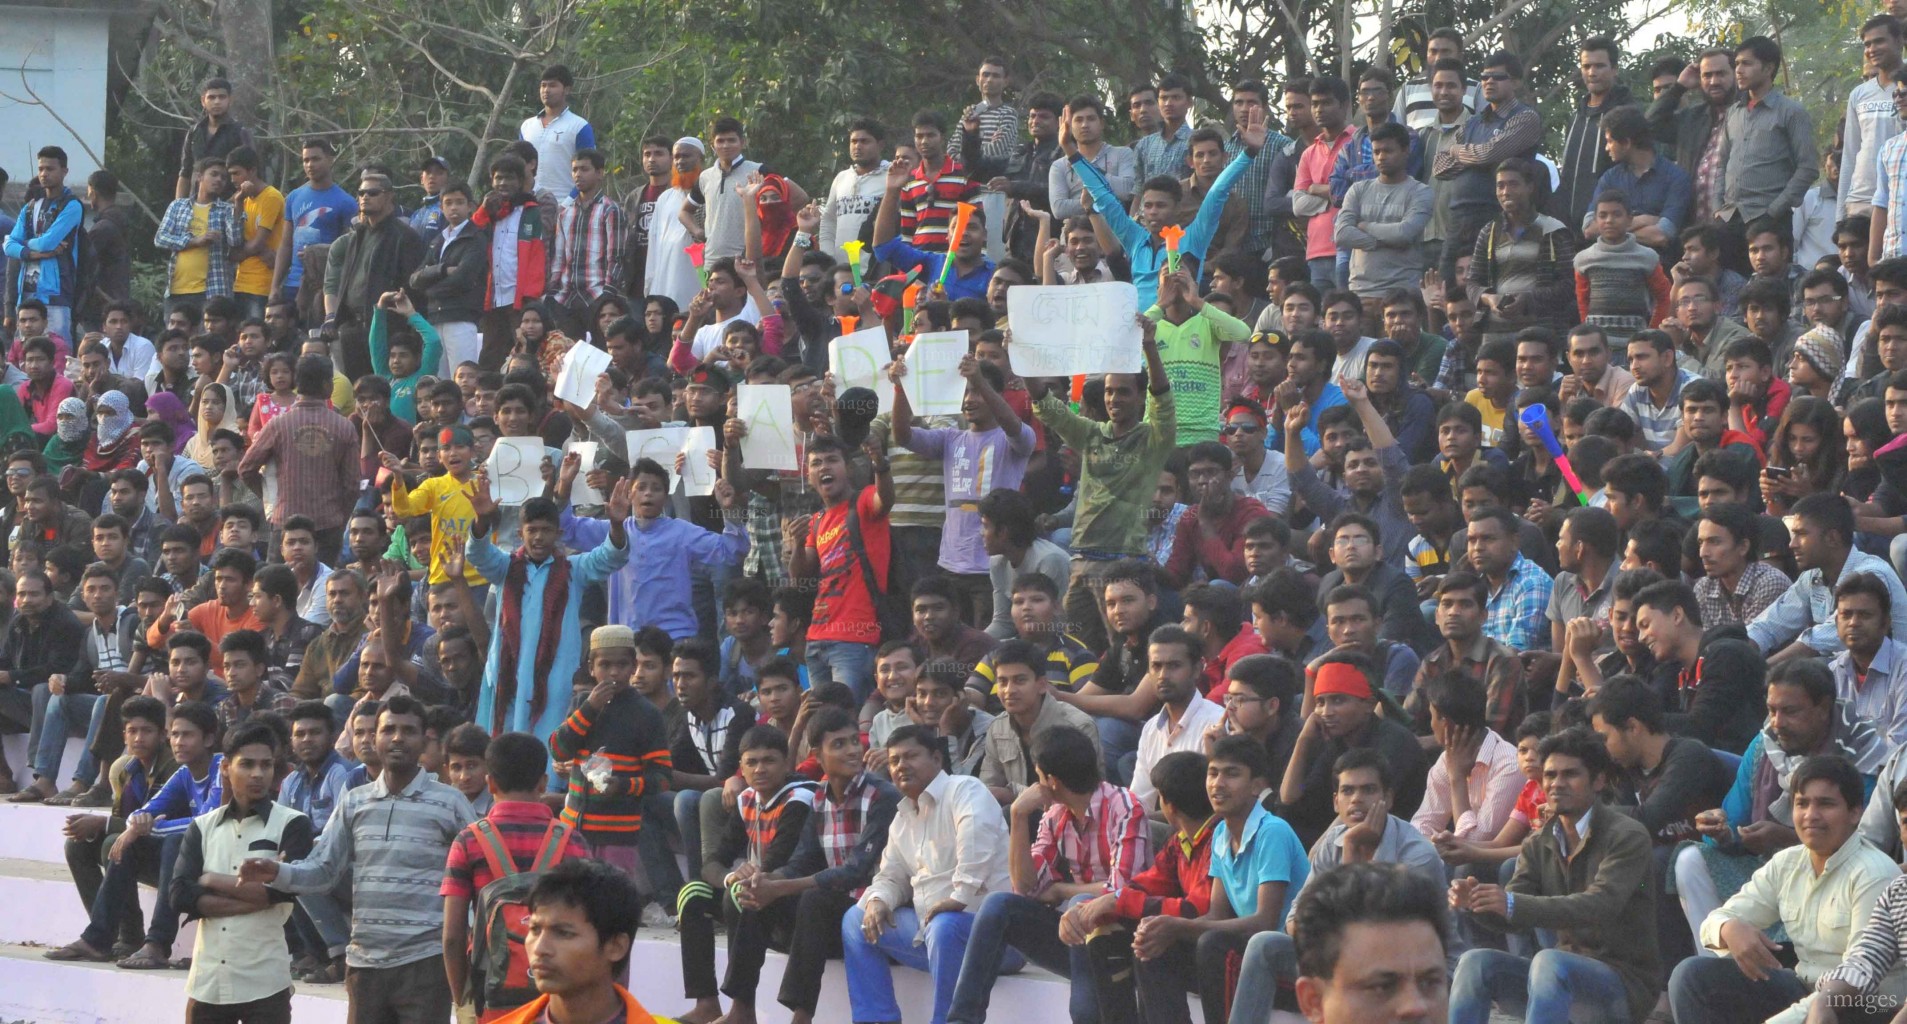 Maldives vs Cambodia in Bangubandhu Gold Cup in Dhaka, Bangladesh, Monday, January. 11, 2016.  (Photos: Bangladesh Football Federation).